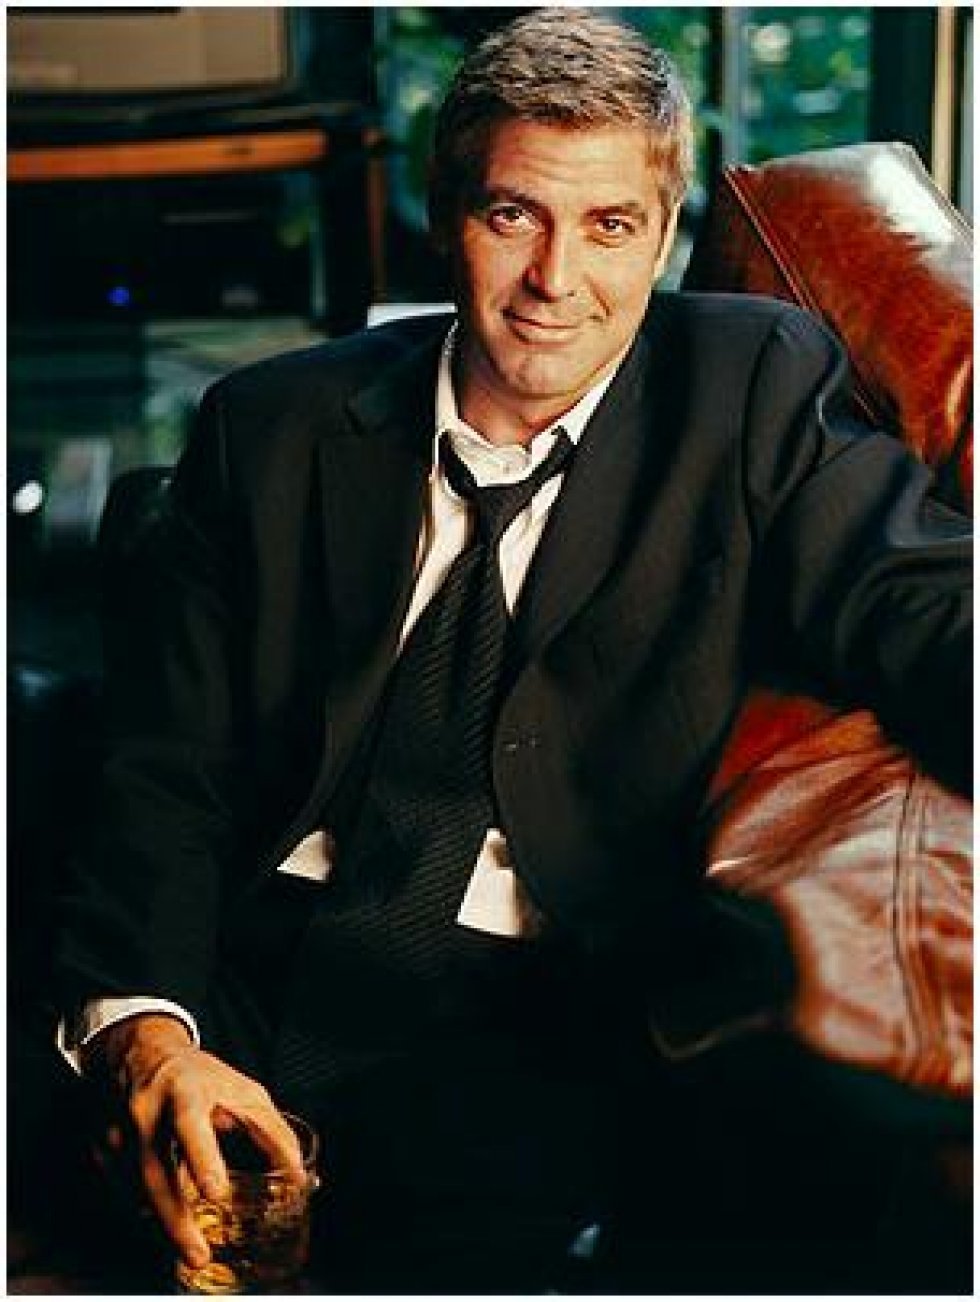 George Clooney: skuespiller, instruktør, damecharmør og Nespresso-koncernens medieansigt